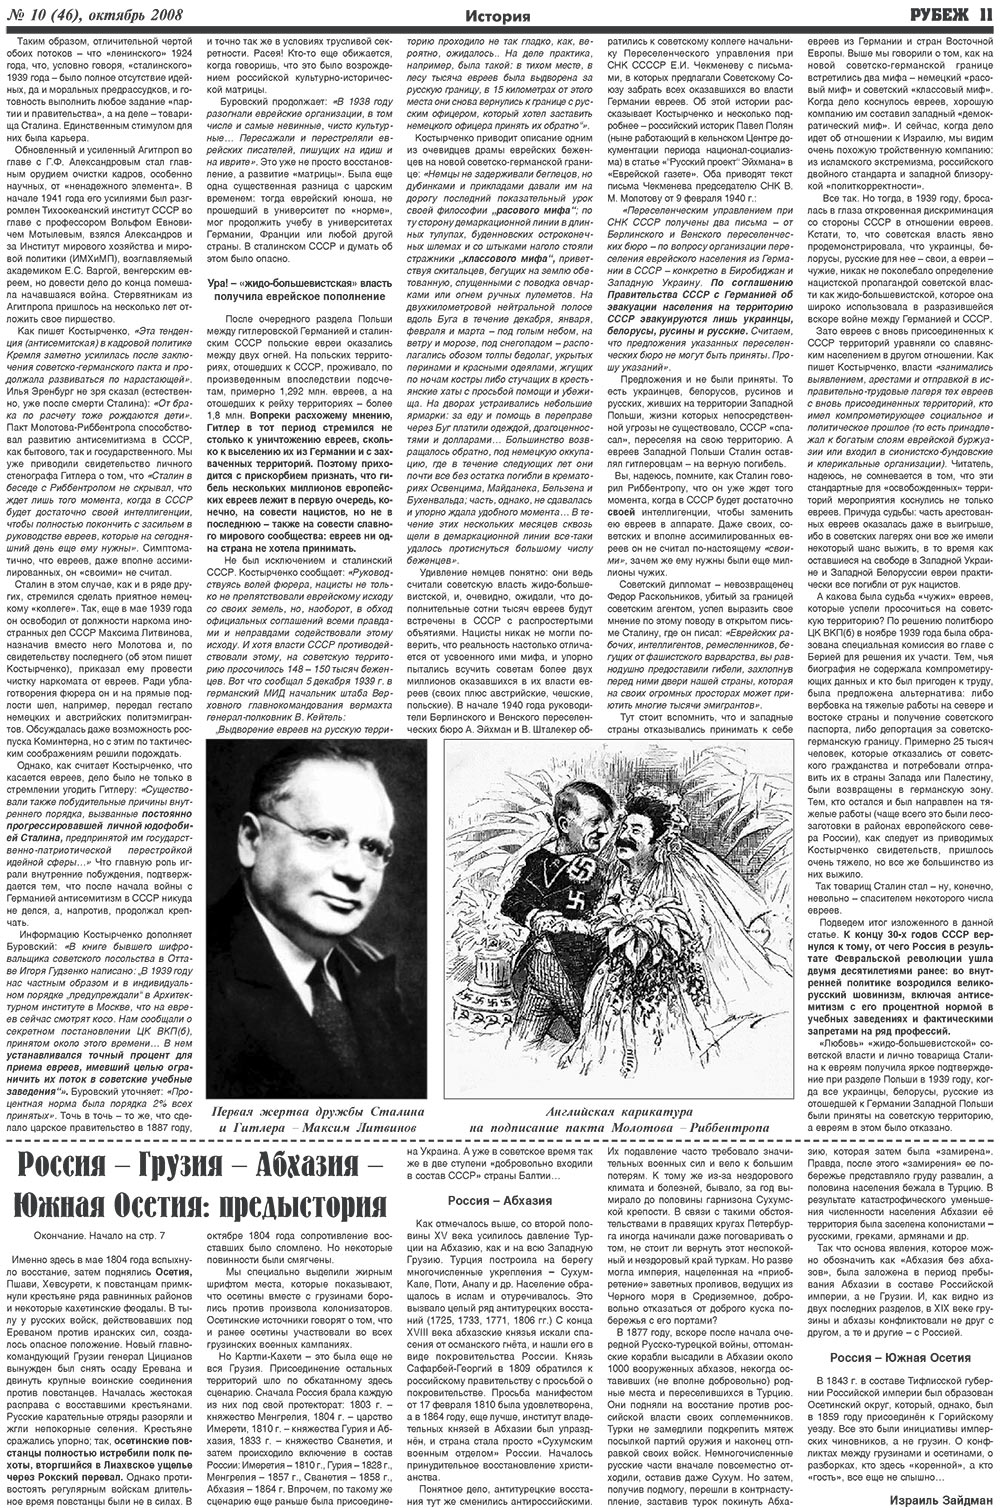 Рубеж (газета). 2008 год, номер 10, стр. 11